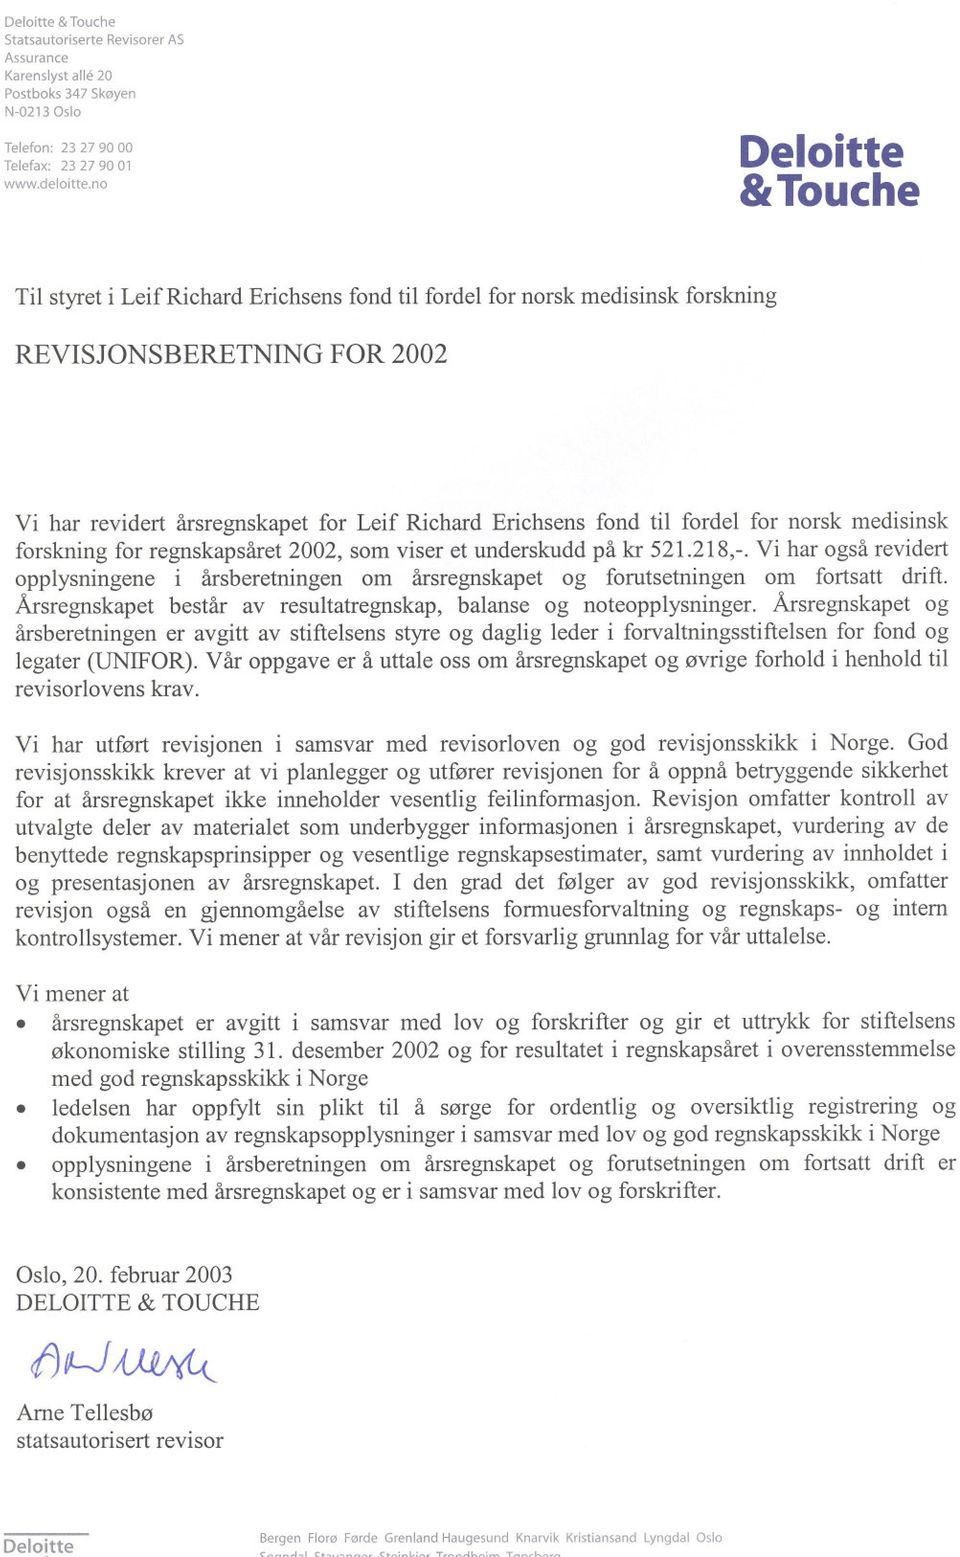 fordel for norsk medisinsk forskning for regnskapsåret 2002, som viser et underskudd på kr 521218,- Vi har også revidert opplysningene i årsberetningen om årsregnskapet og forutsetningen om fortsatt